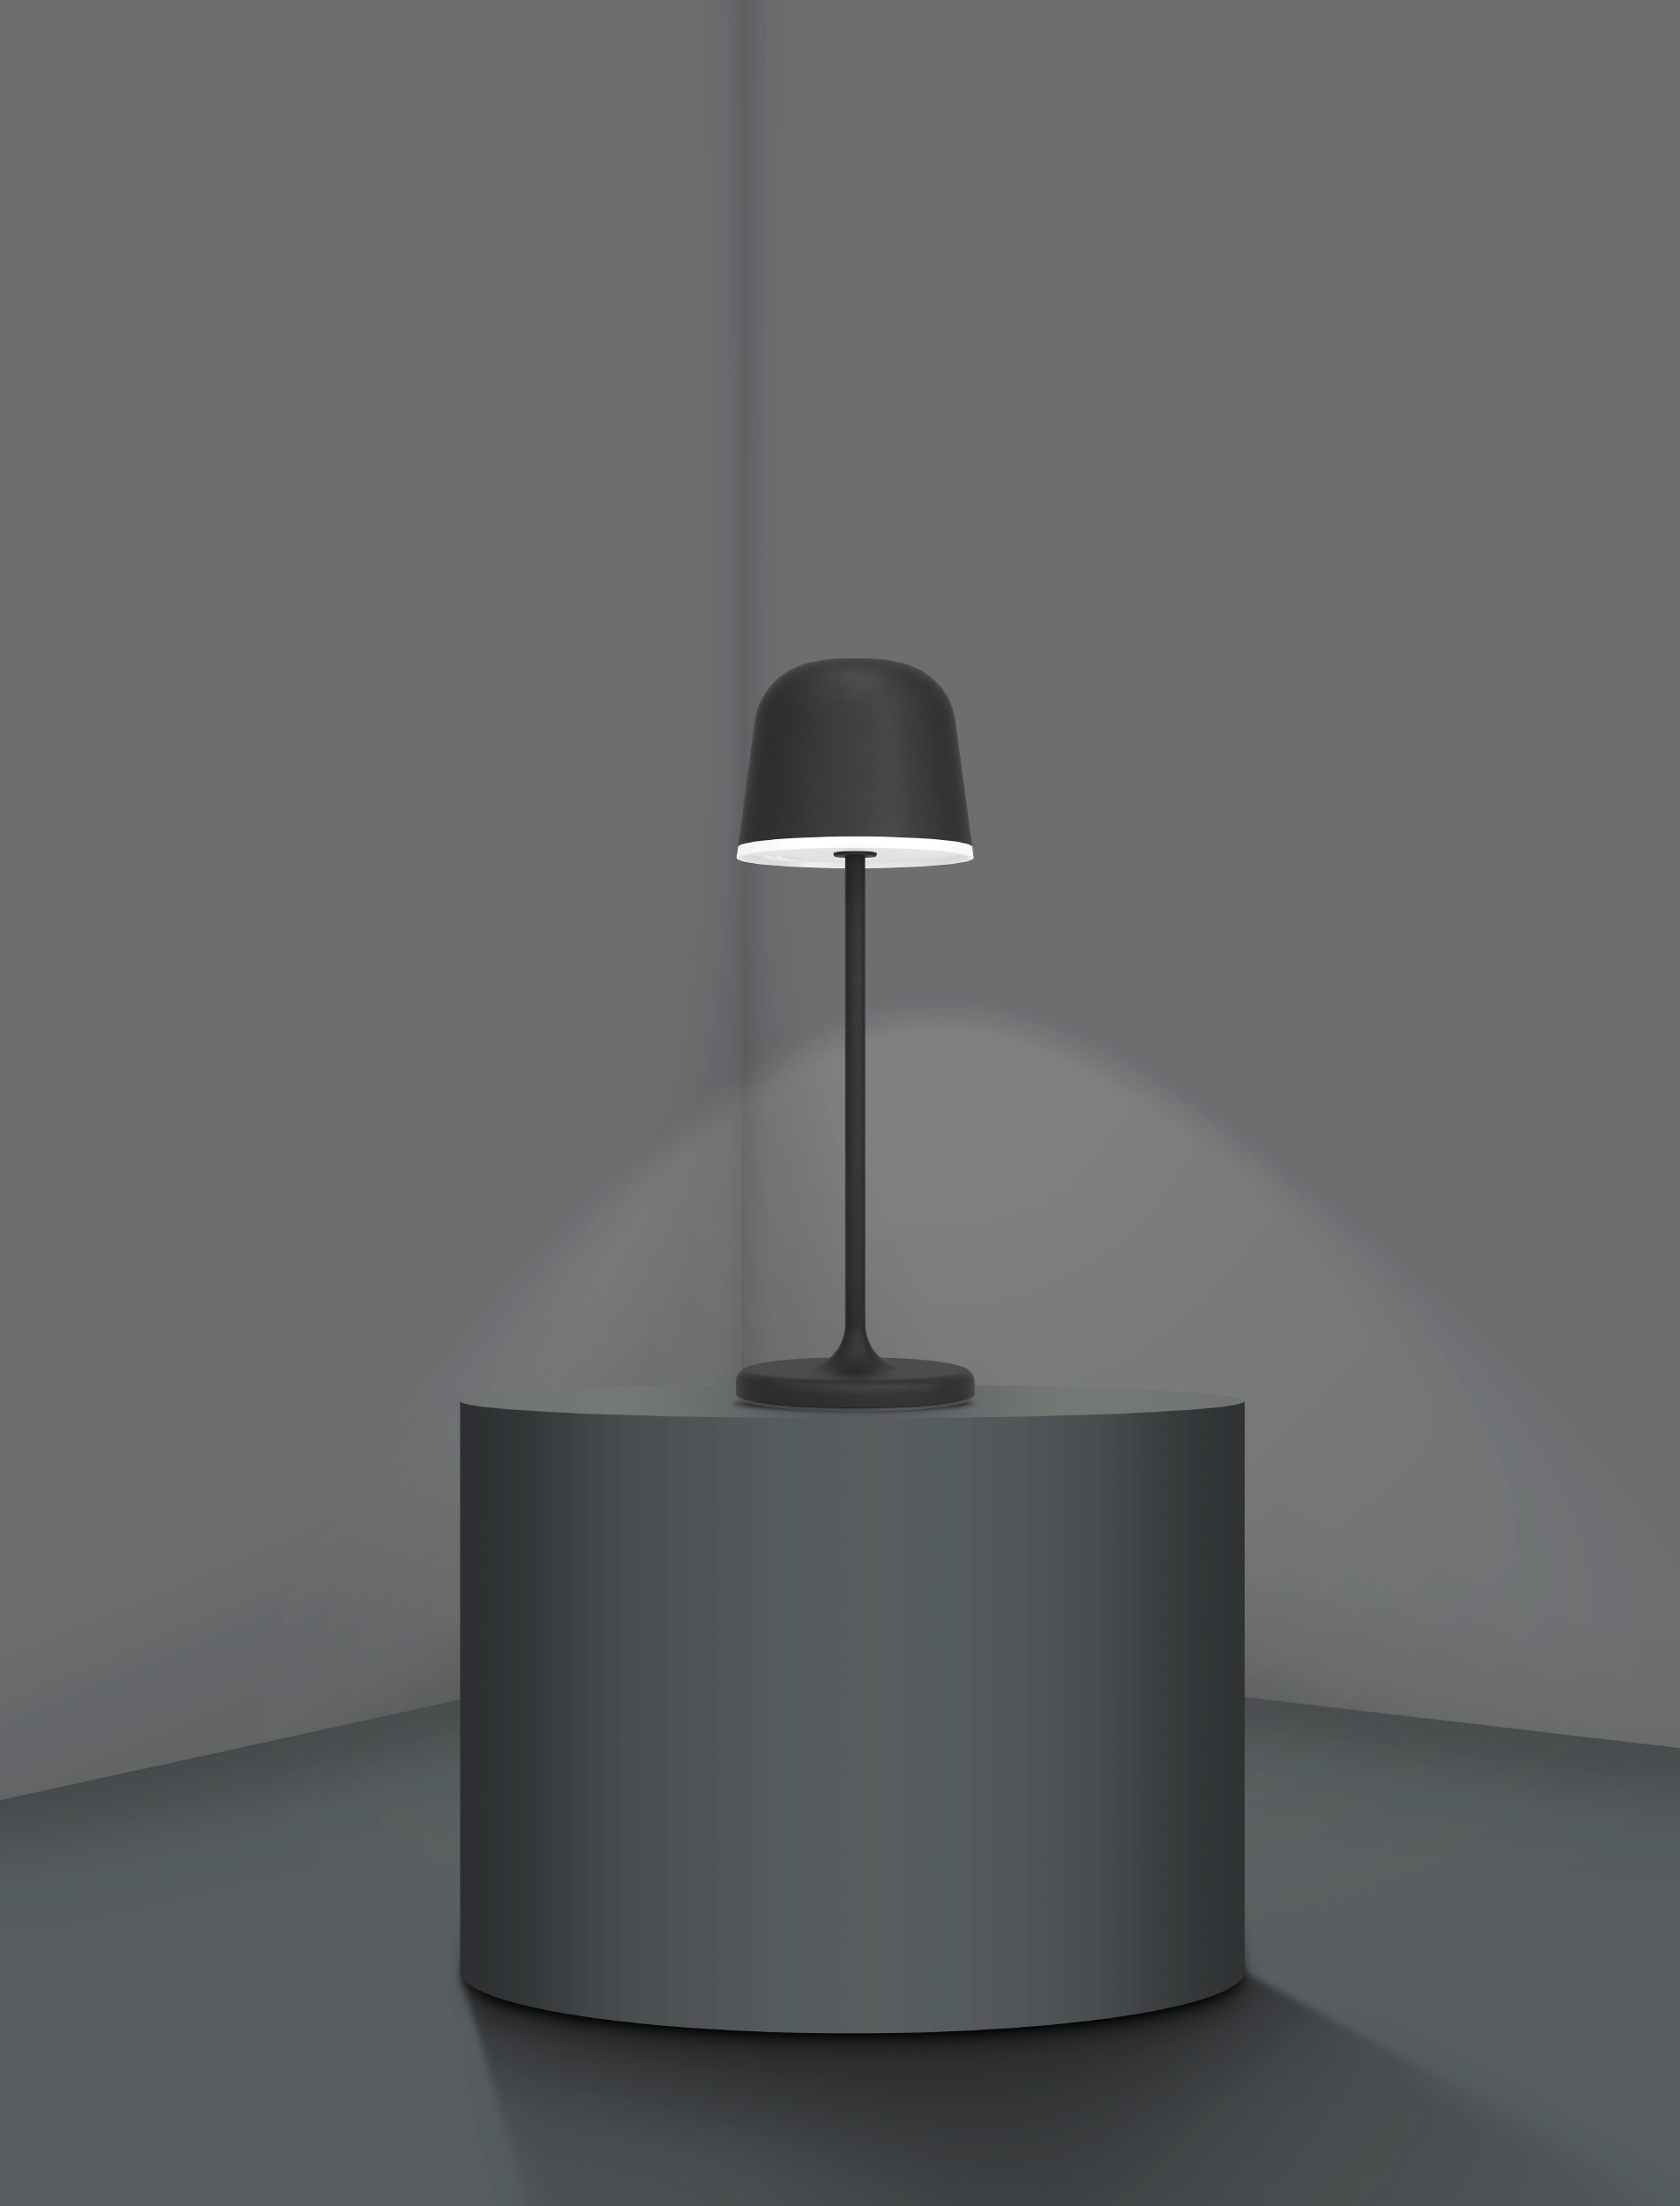 EGLO Lampe de table Mannera 900457 noir, batterie